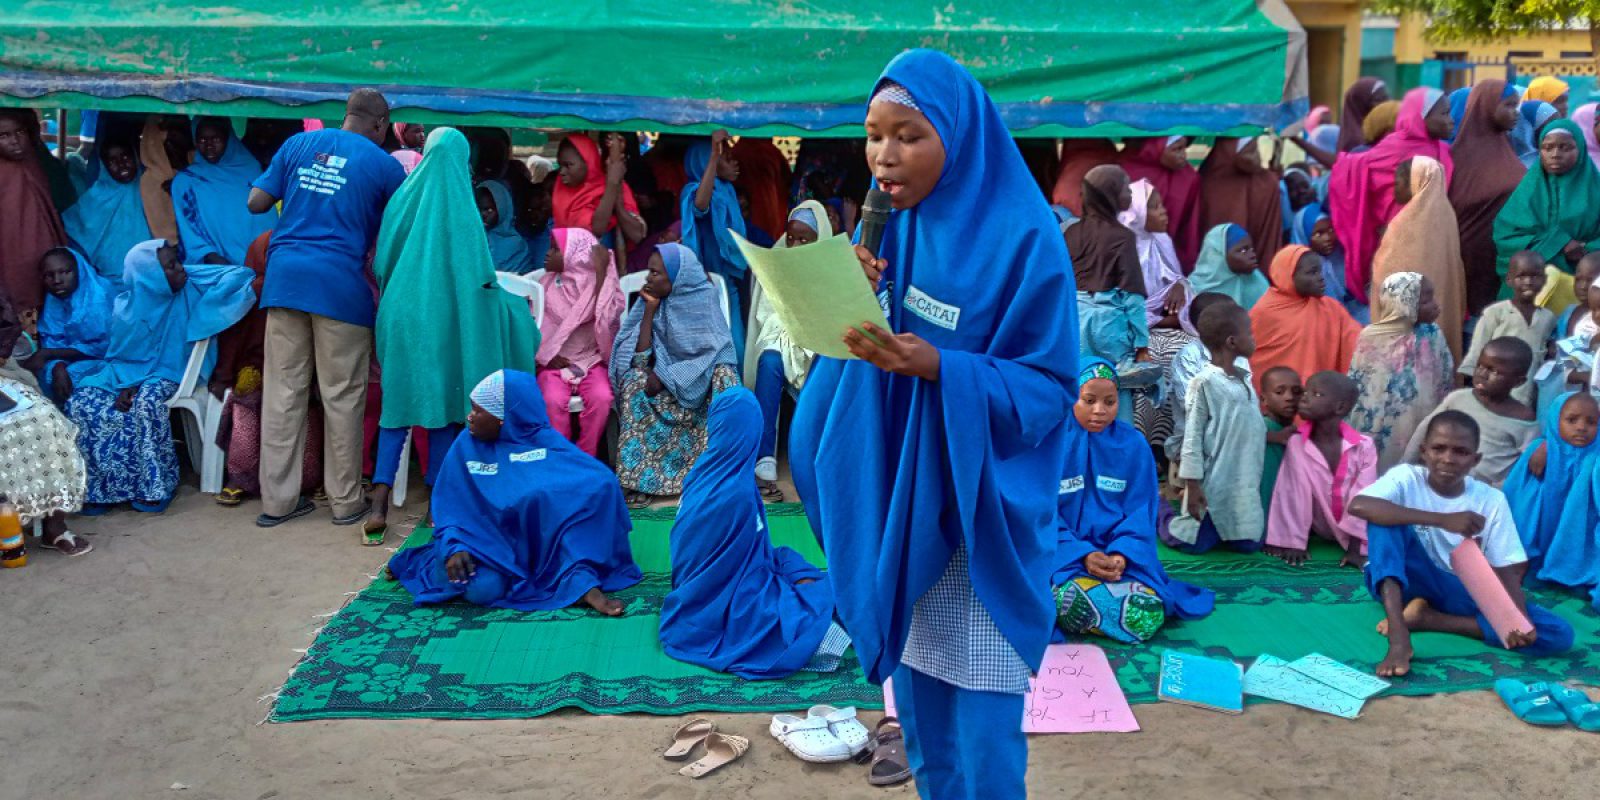 Con el apoyo de la Unión Europea, el JRS está ofreciendo una educación de calidad a los niños del Estado de Borno. Niños participantes en un proyecto educativo financiado por la UE en el Estado de Borno, Nigeria (Servicio Jesuita a Refugiados).